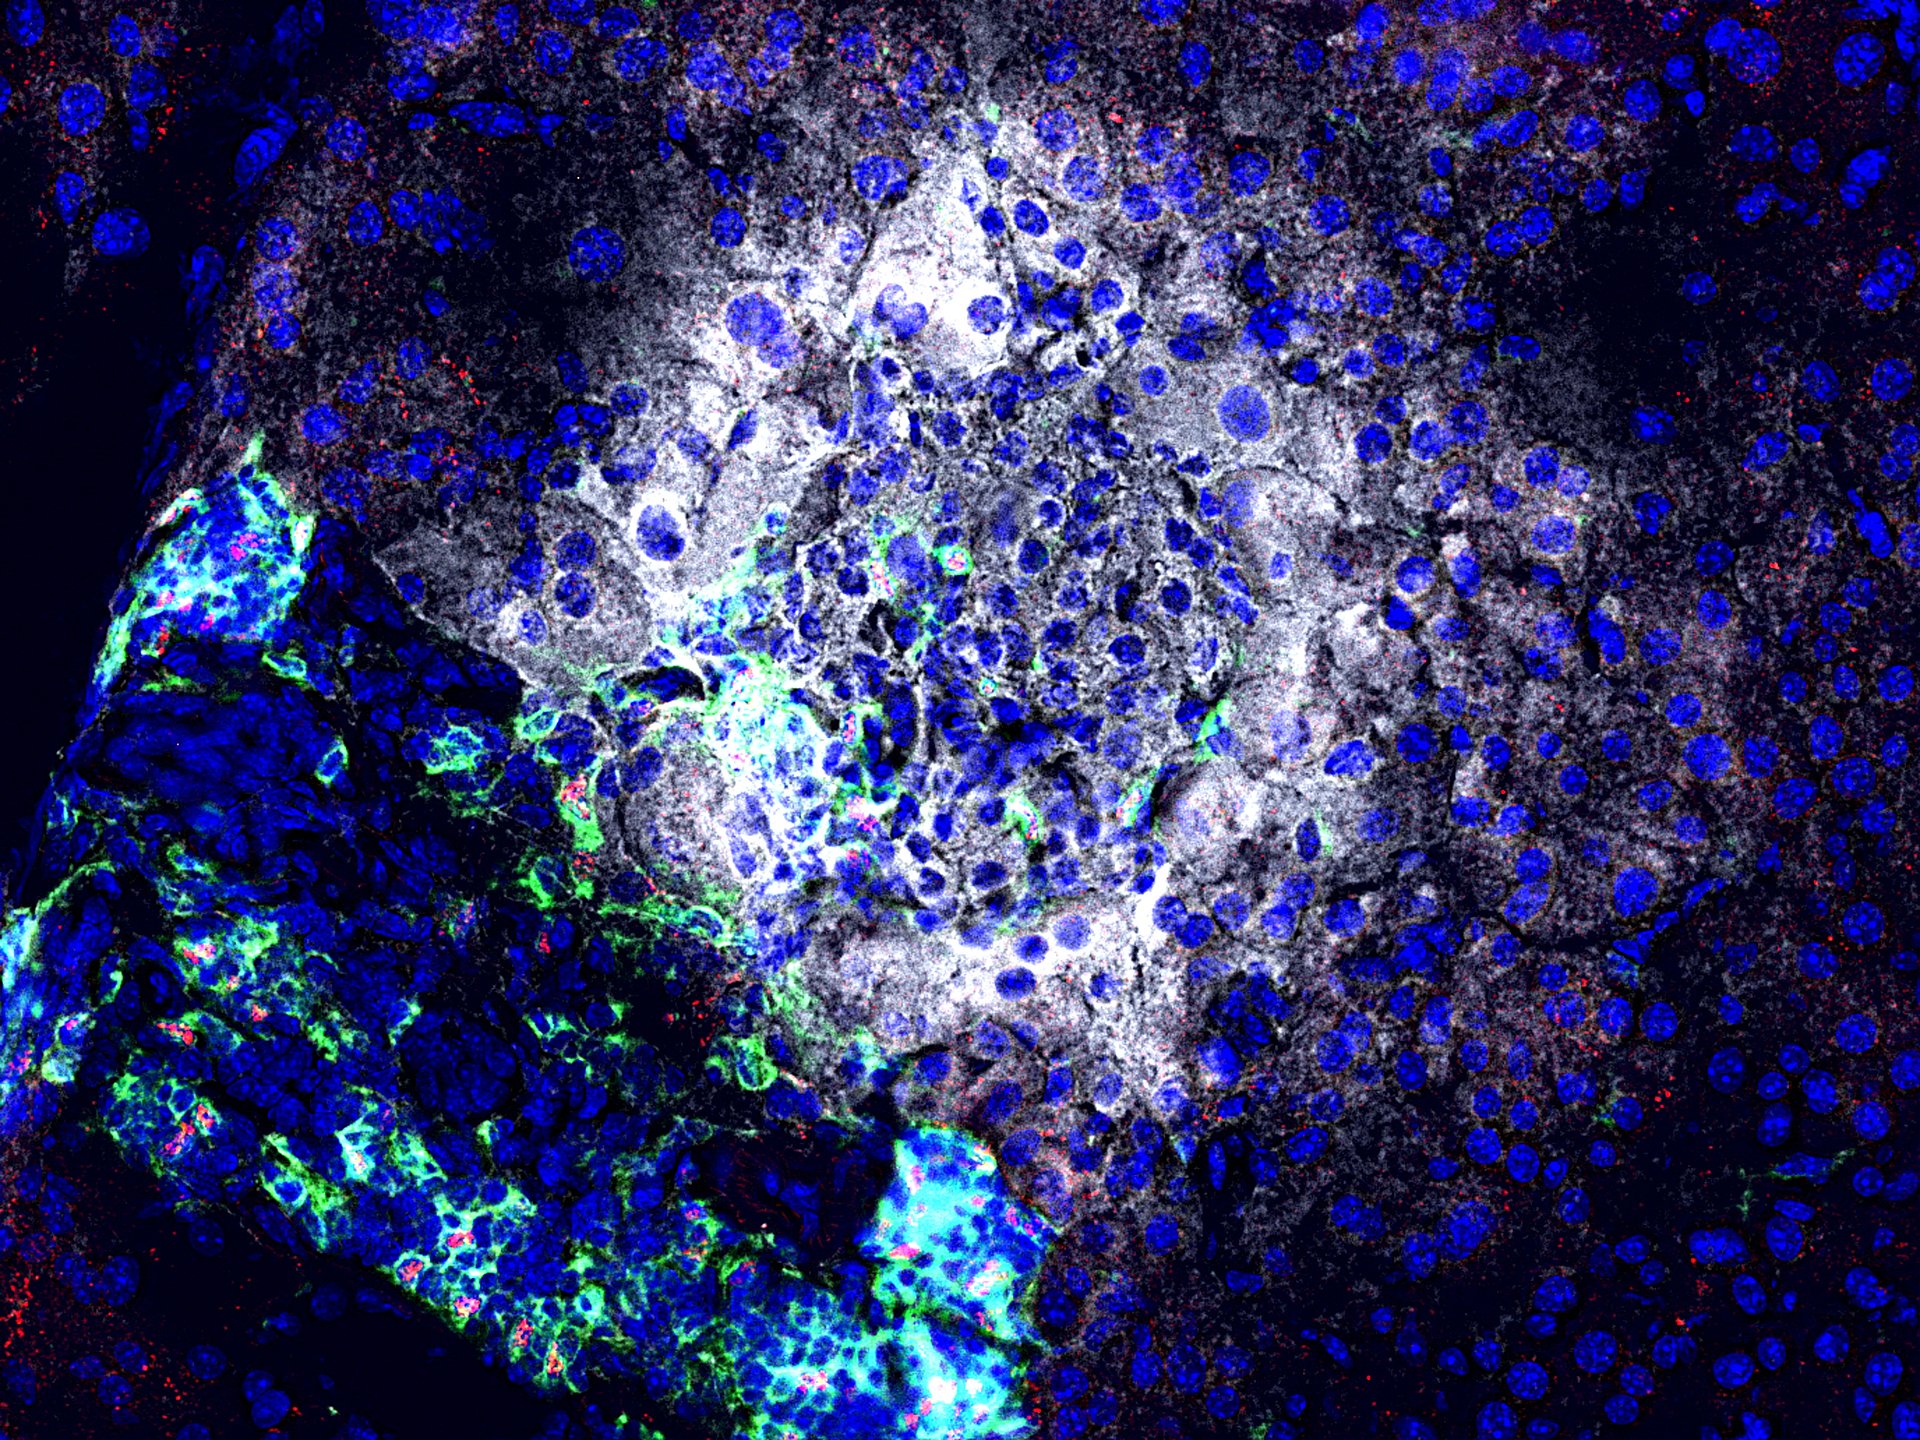 Nach Gabe eines Antagomir gegen miR92a werden Insulin (weiß) produzierende Betazellen seltener von Immunzellen (grün) angegriffen. Zudem sind mehr regulatorische T Zellen (rot) vorhanden, die die Betazellen (weiß) schützen können. (Foto: Helmholtz Zentrum München)